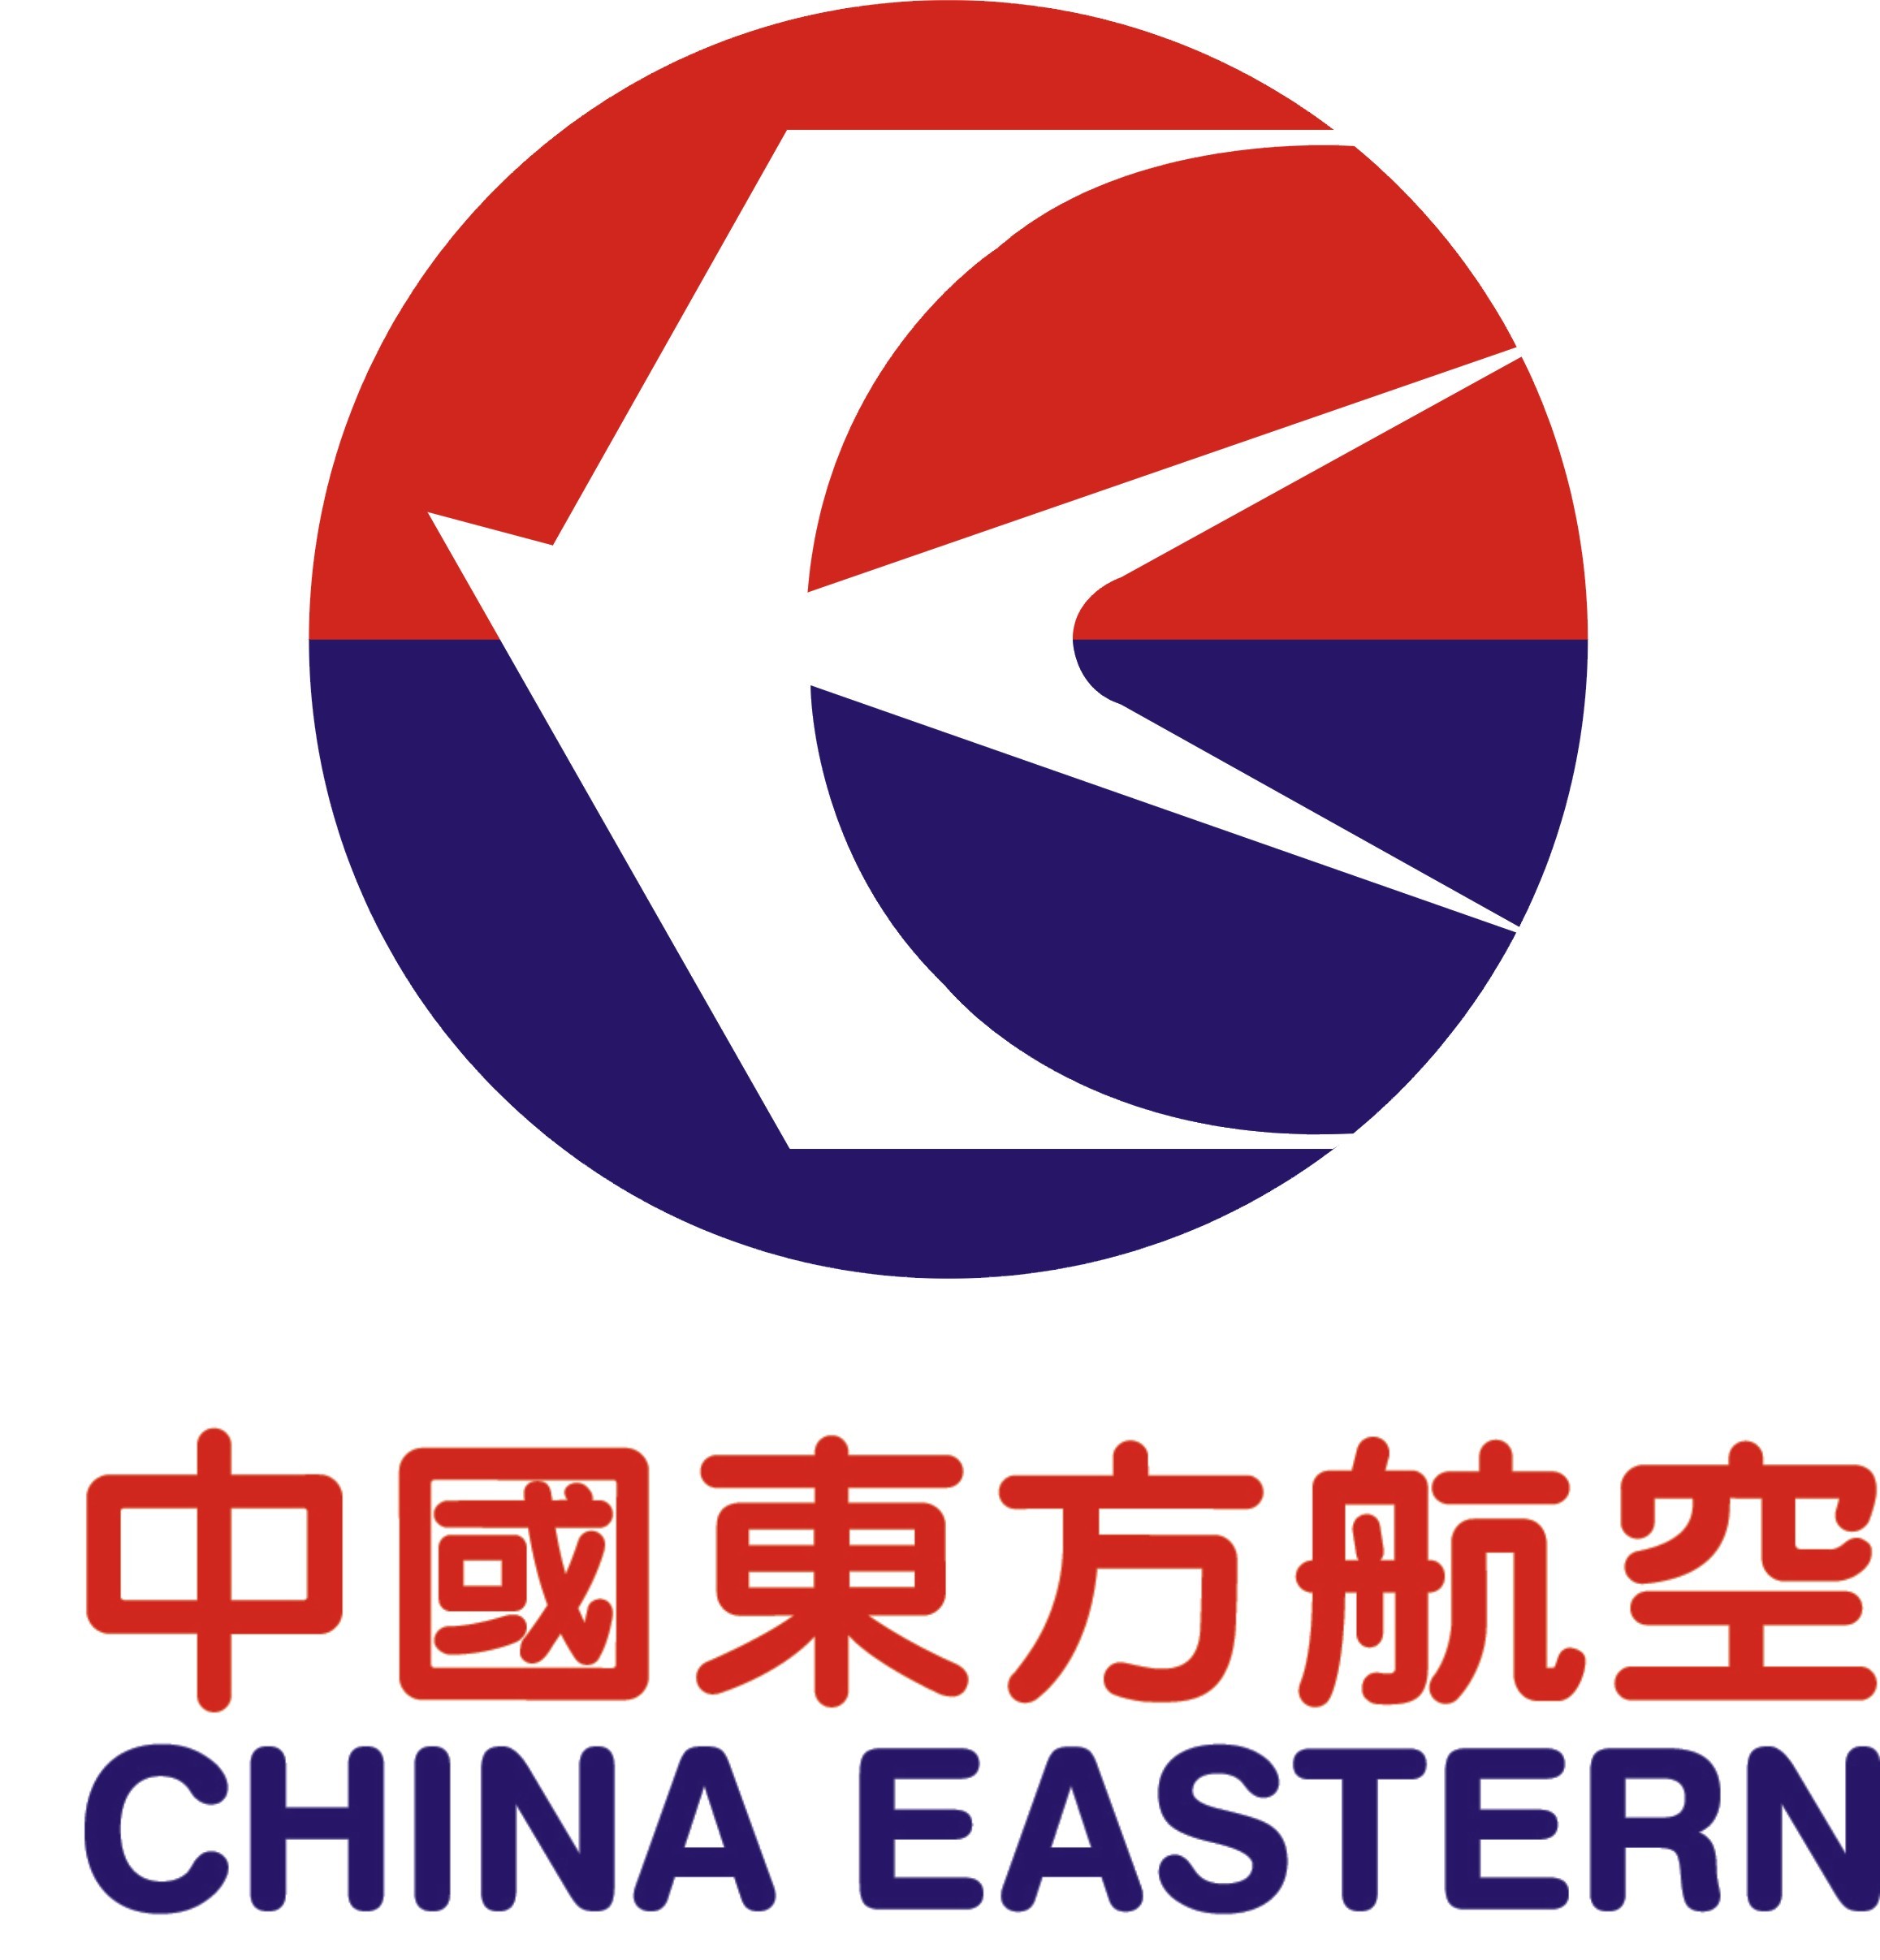 香港快运航空标志logo图片-诗宸标志设计